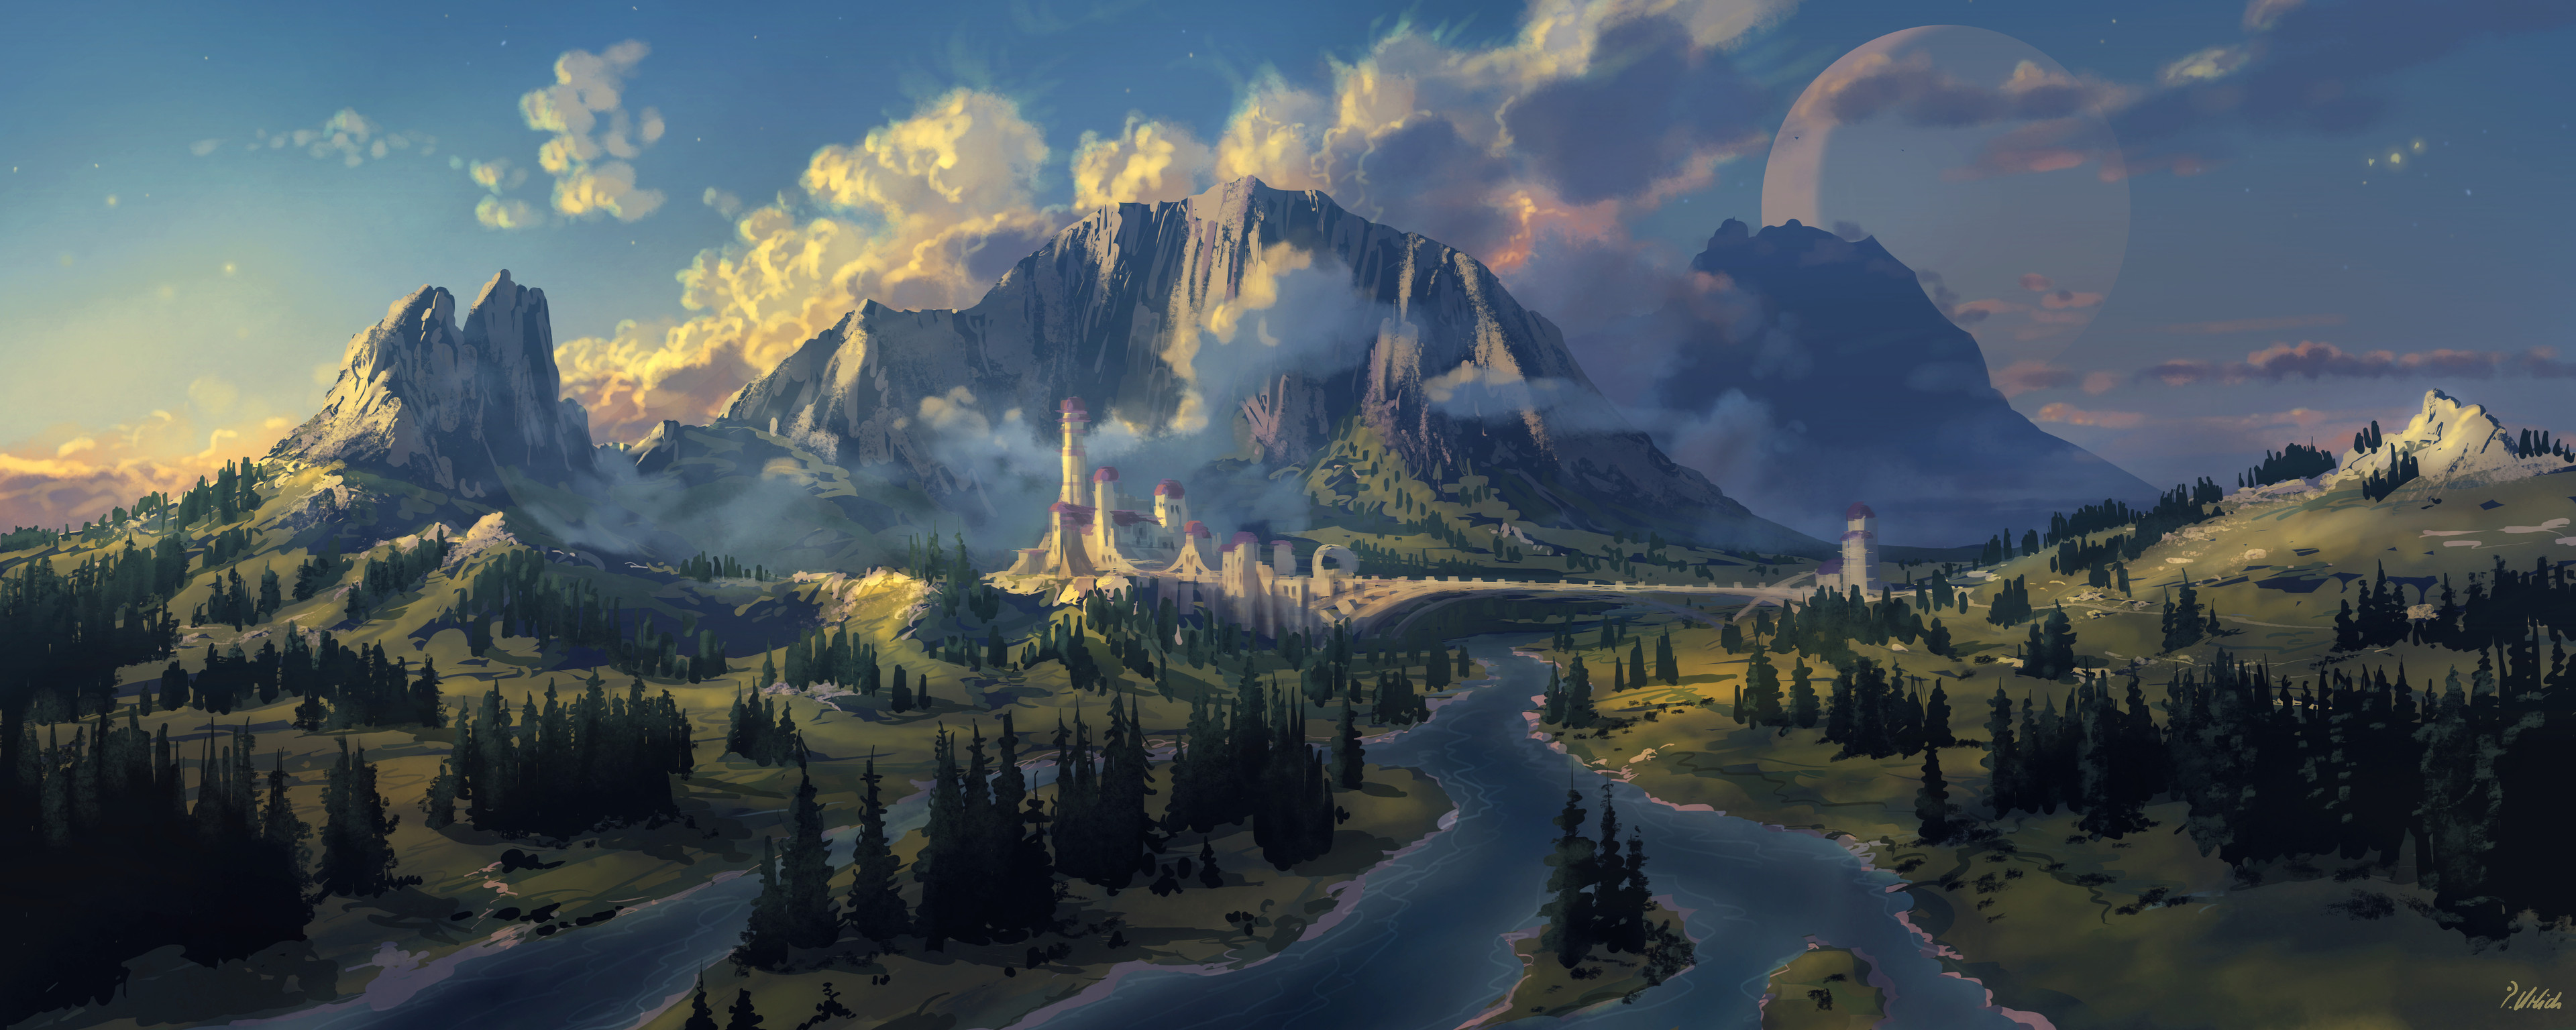 Fantasy Landscape Ultra HD wallpaper | Pxfuel